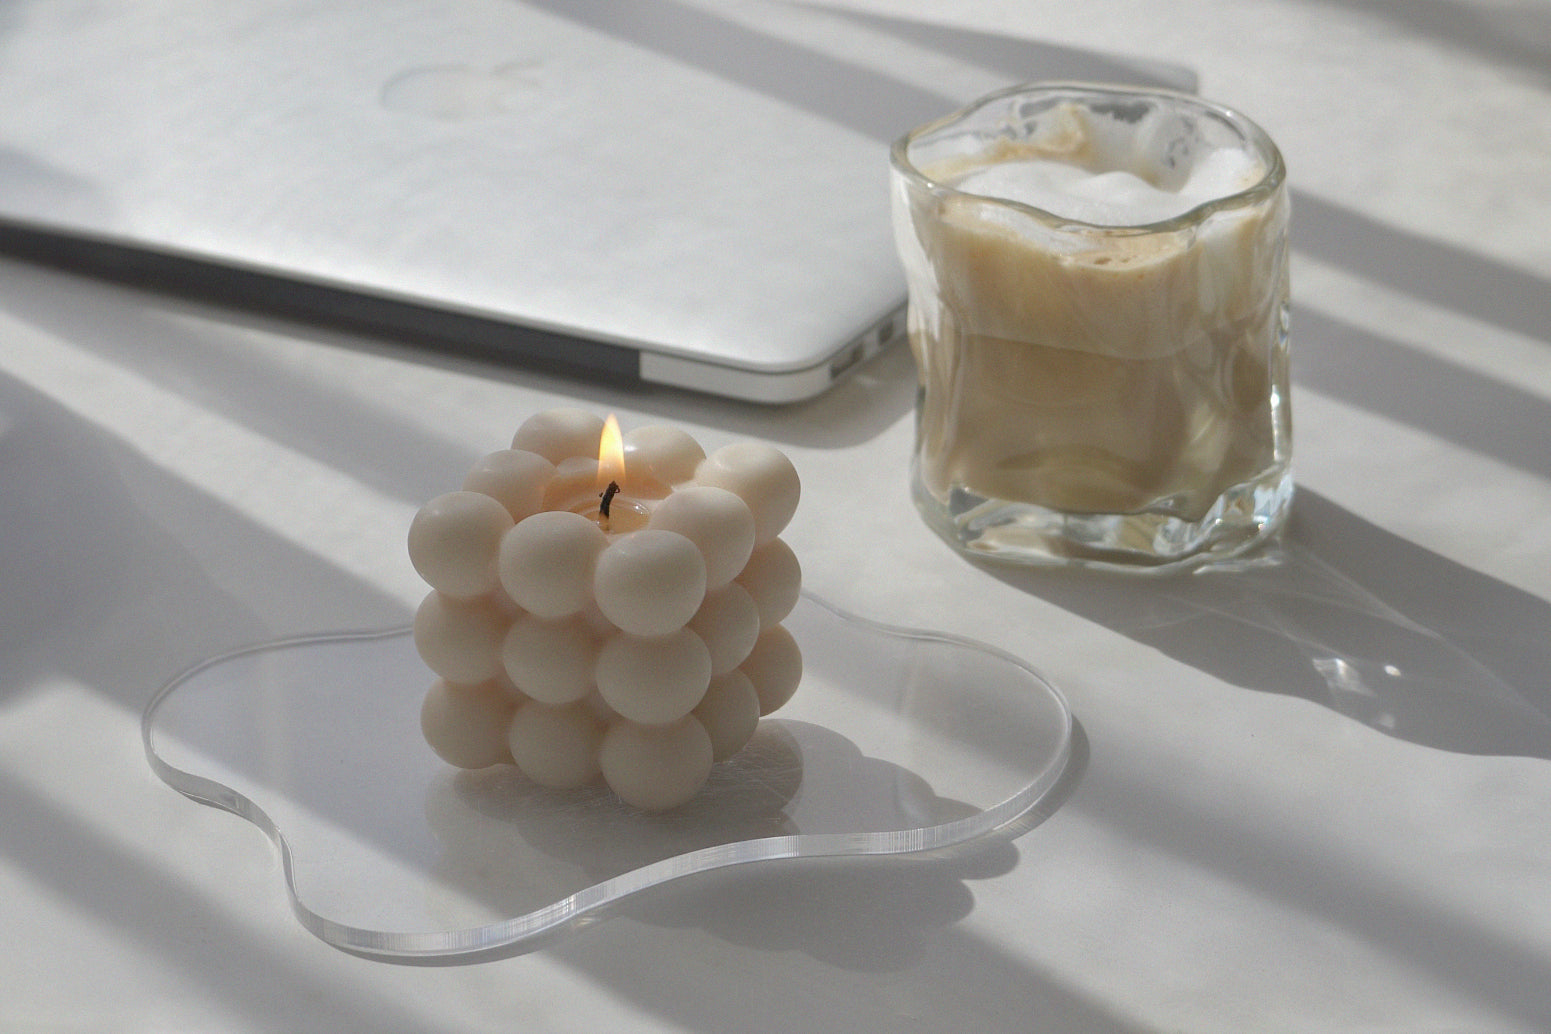 una vela cúbica de color beige encendida sobre un posavasos acrílico transparente, irregular y ondulado y un café con leche helado con crema encima en un vaso irregular de 6 oz